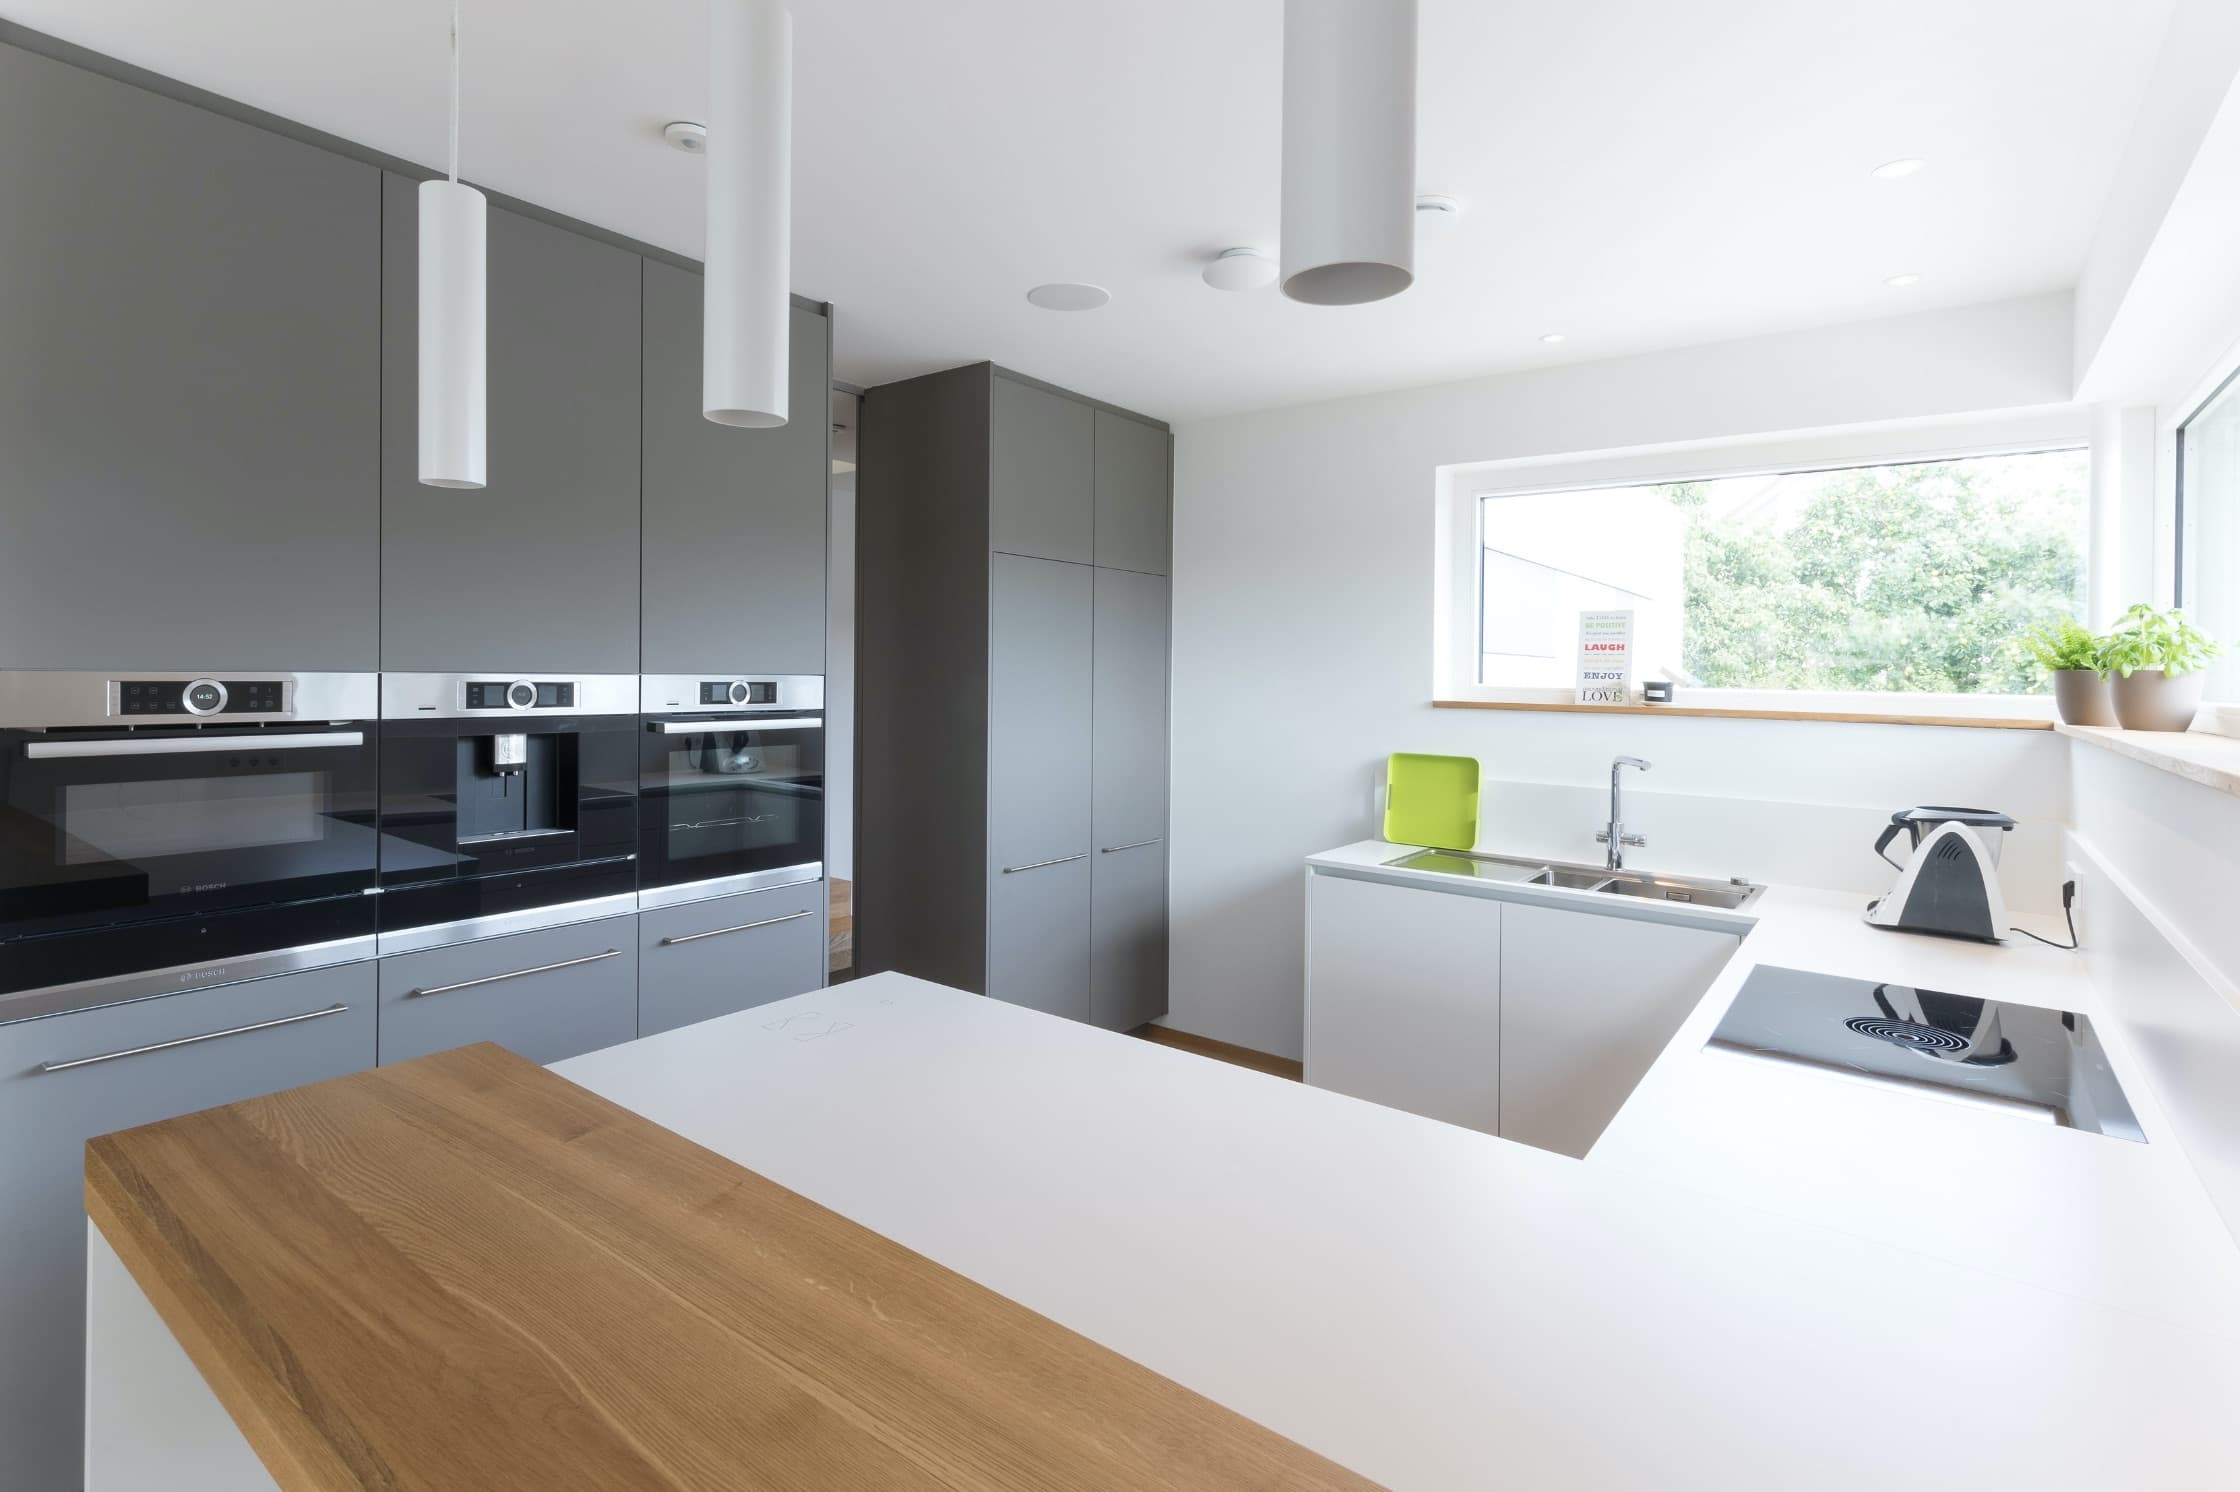 Einbauküche und Trennwand in einem – Struktur und Design für offene Räume